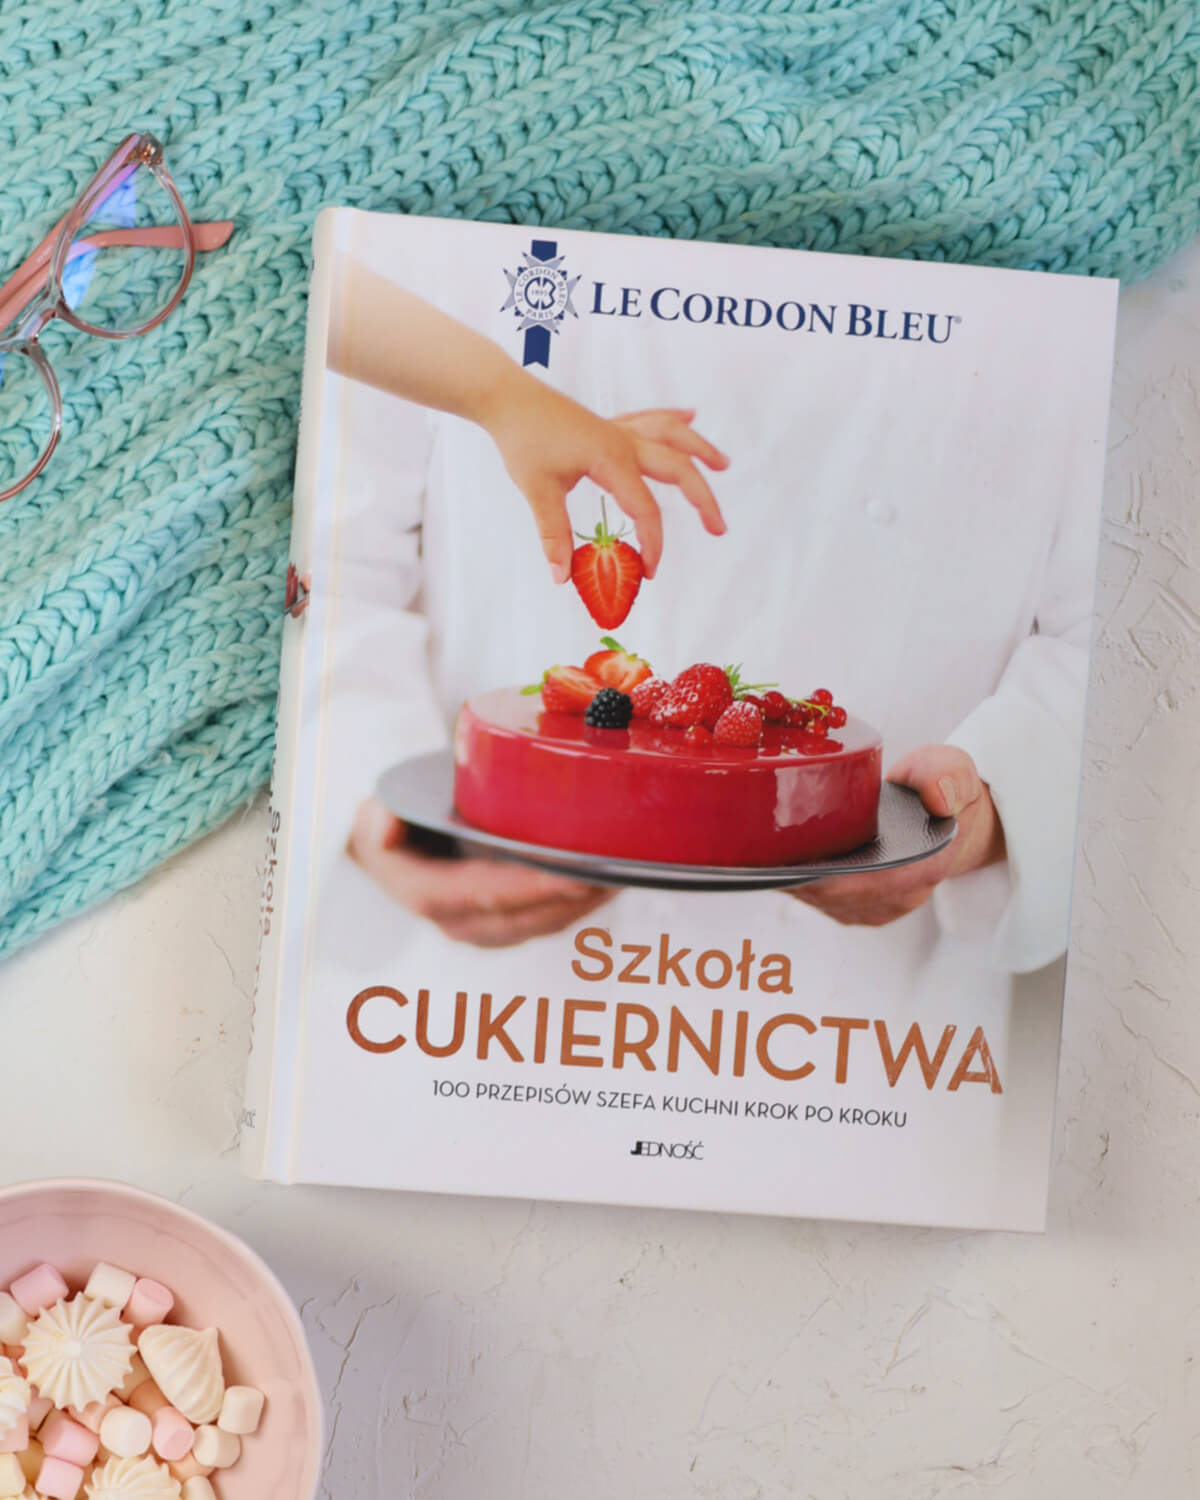 Najlepsze książki cukiernicze, które warto kupić. Część 2, książka Szkoła Cukiernictwa Le Cirdon bleu